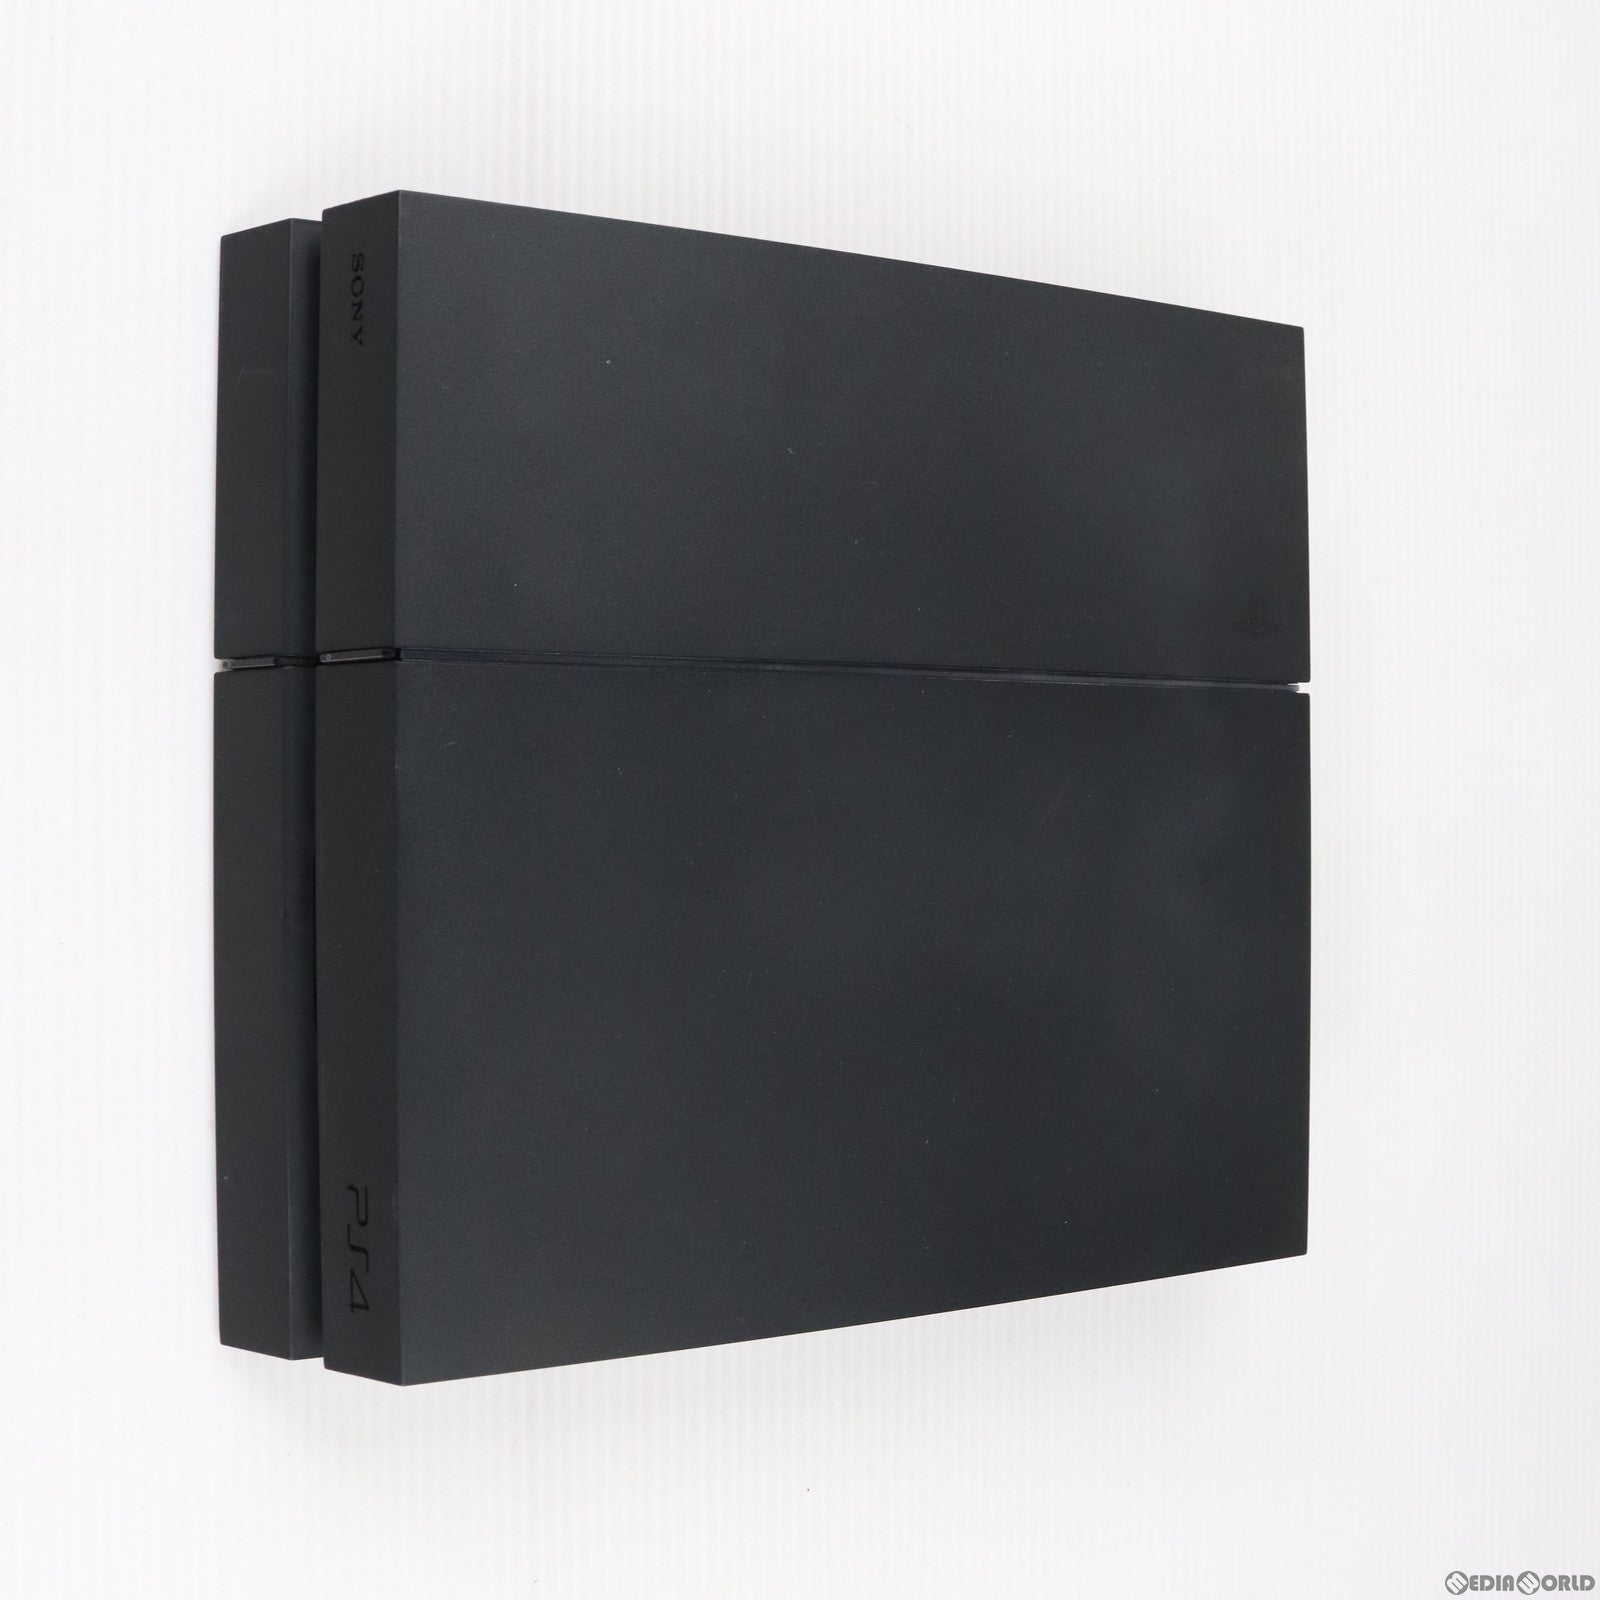 【中古即納】[本体][PS4]プレイステーション4 PlayStation4 ジェット・ブラック 1TB(CUH-1200BB01)(20151203)